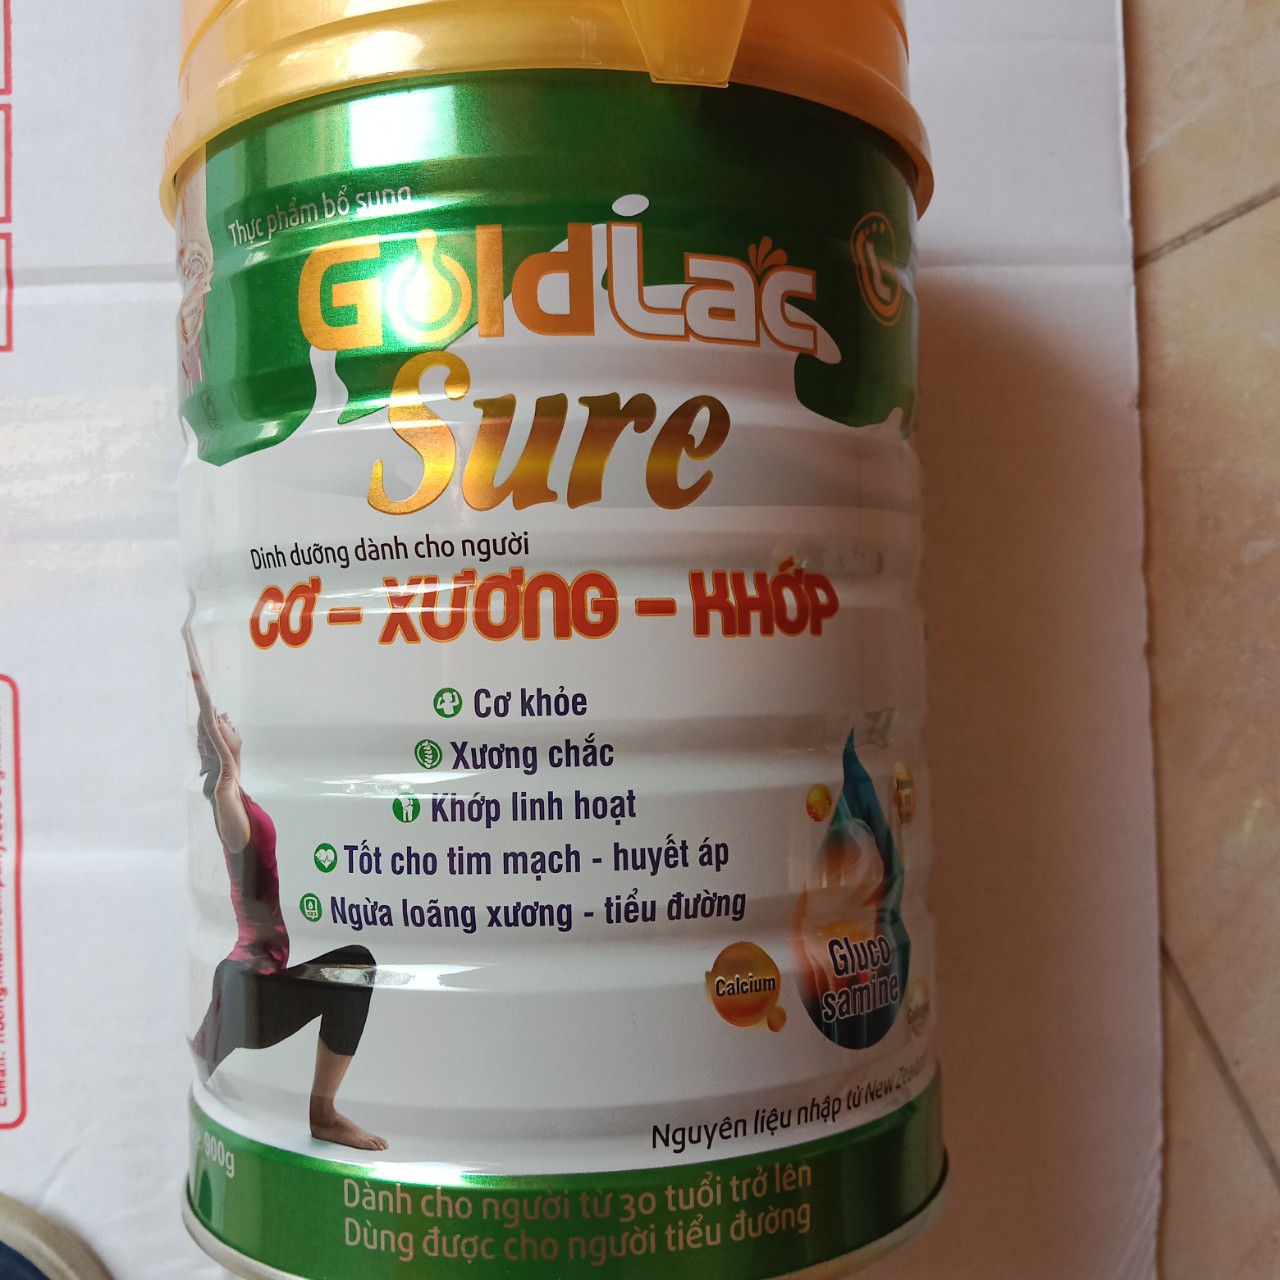 Sữa Xương Khớp Goldlac Sure 900g Khuyên dùng cho người già loãng xương